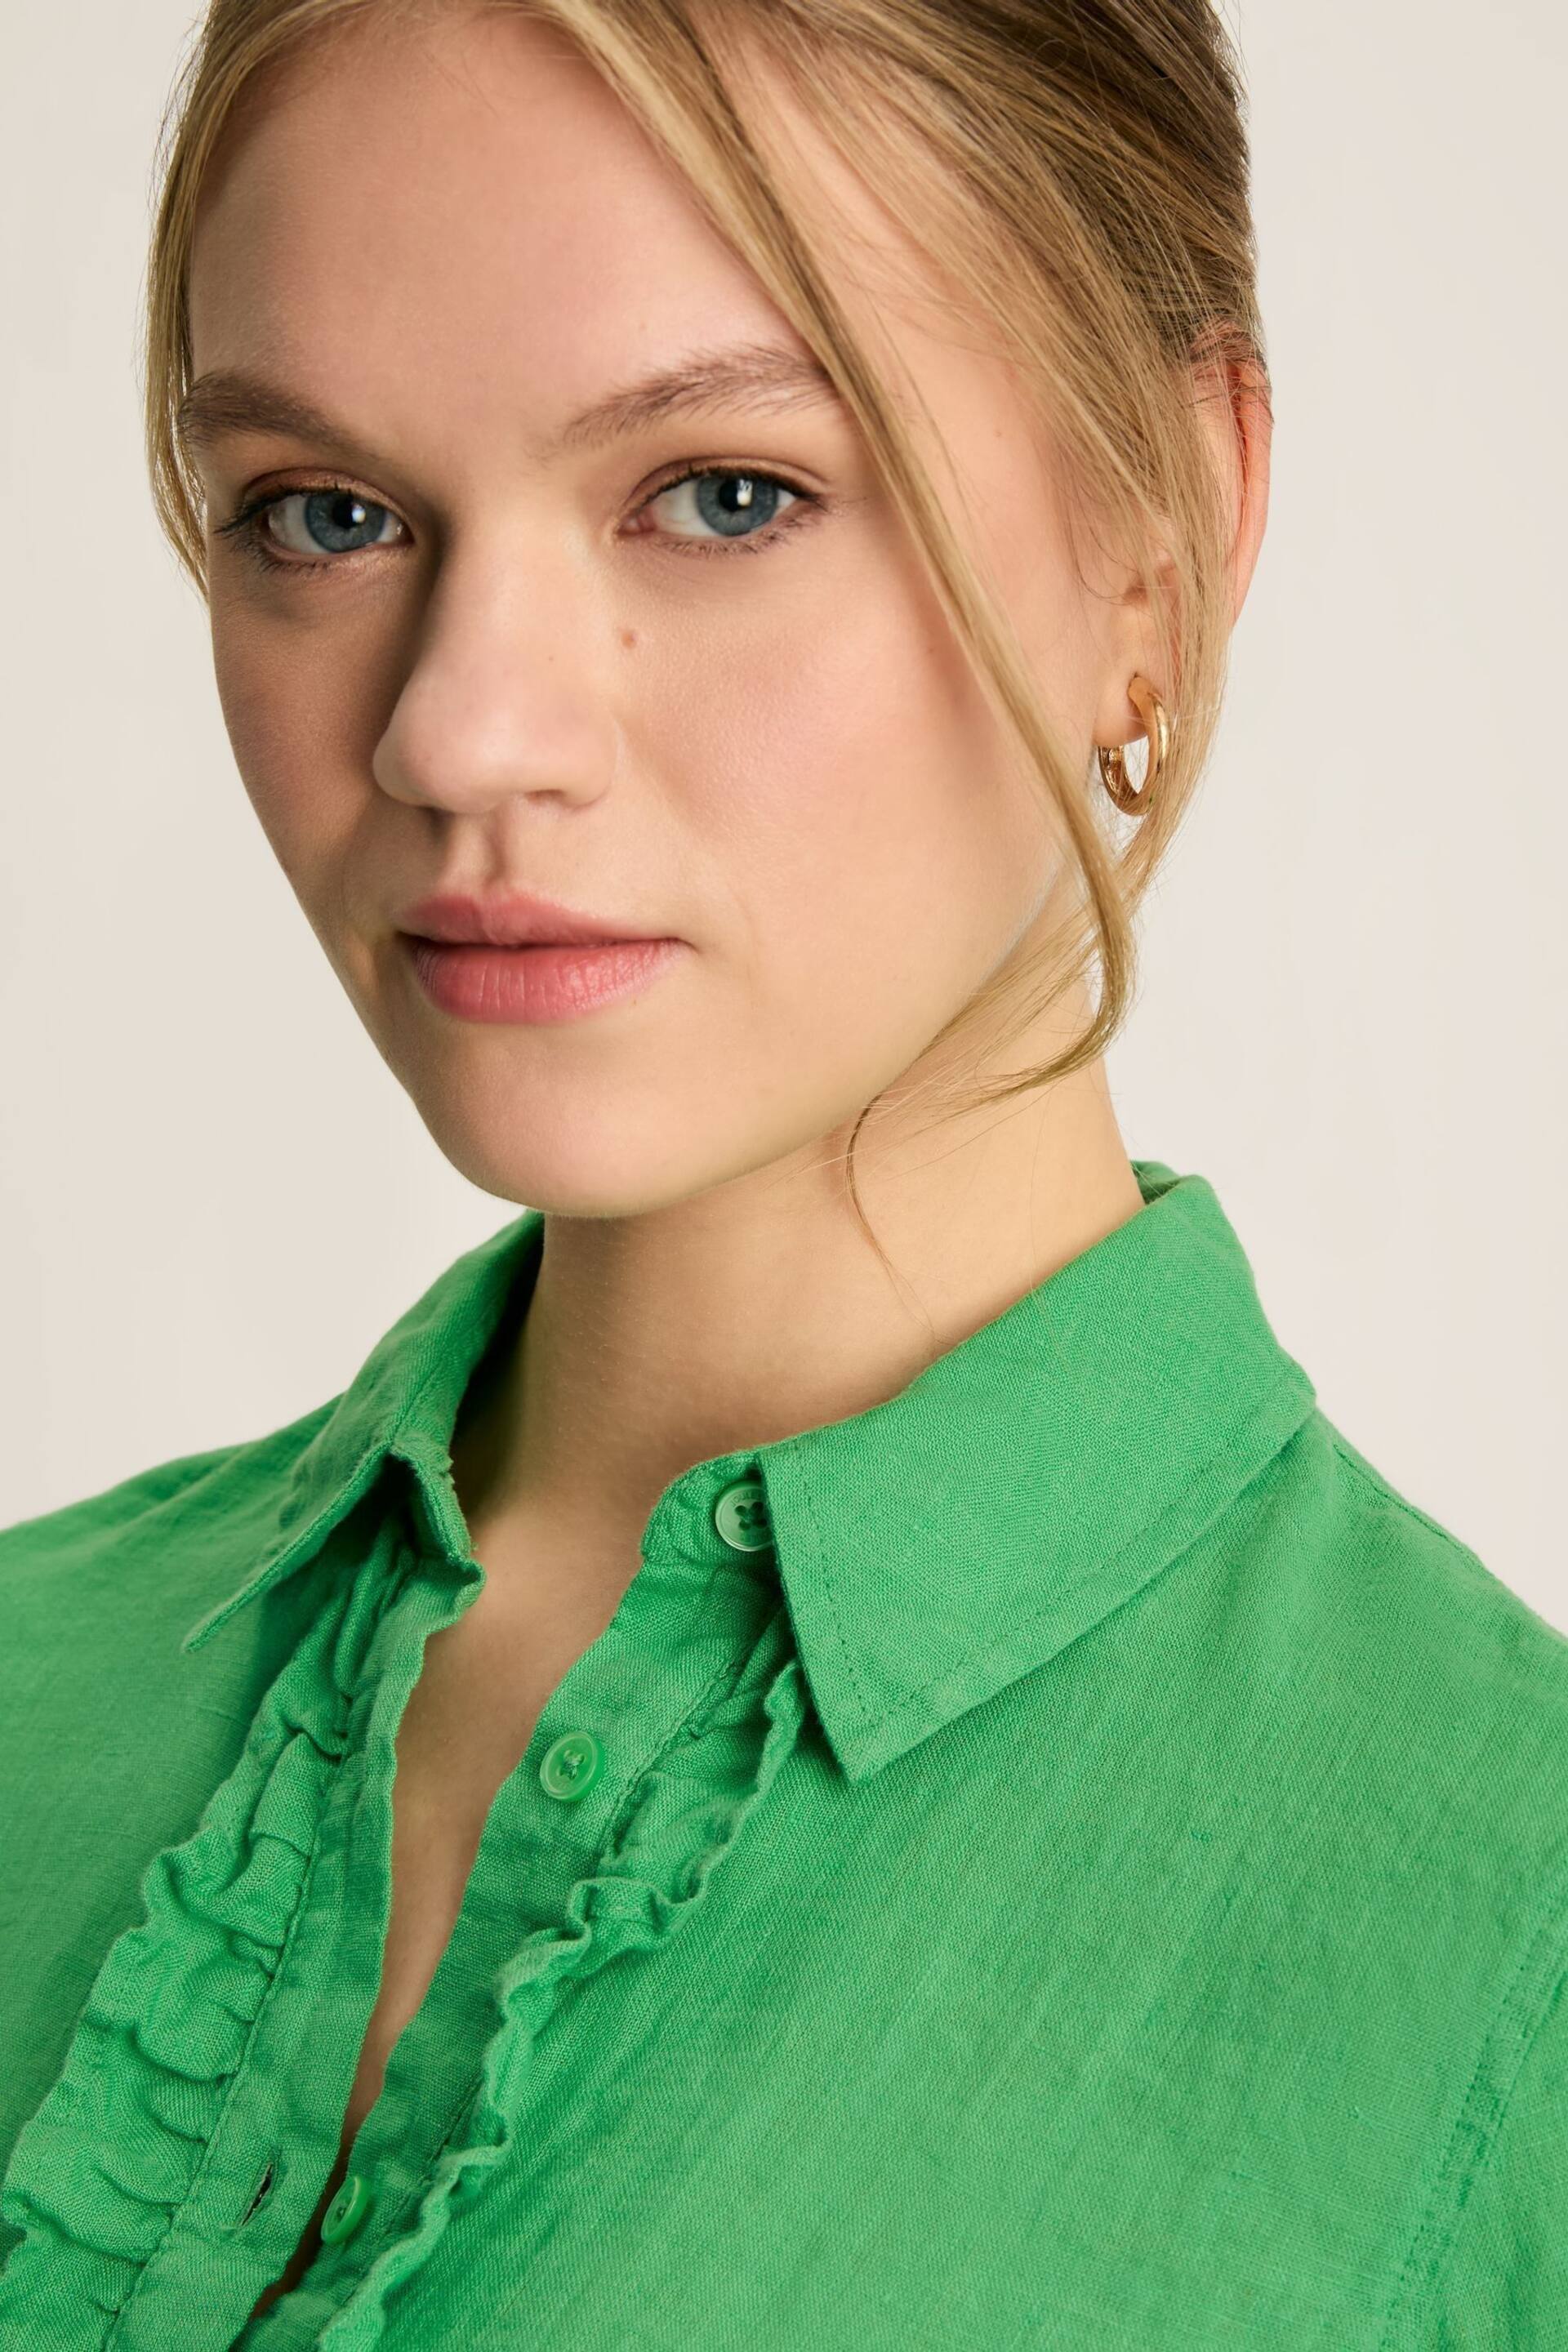 Joules Selene Green 100% Linen Shirt - Image 6 of 6